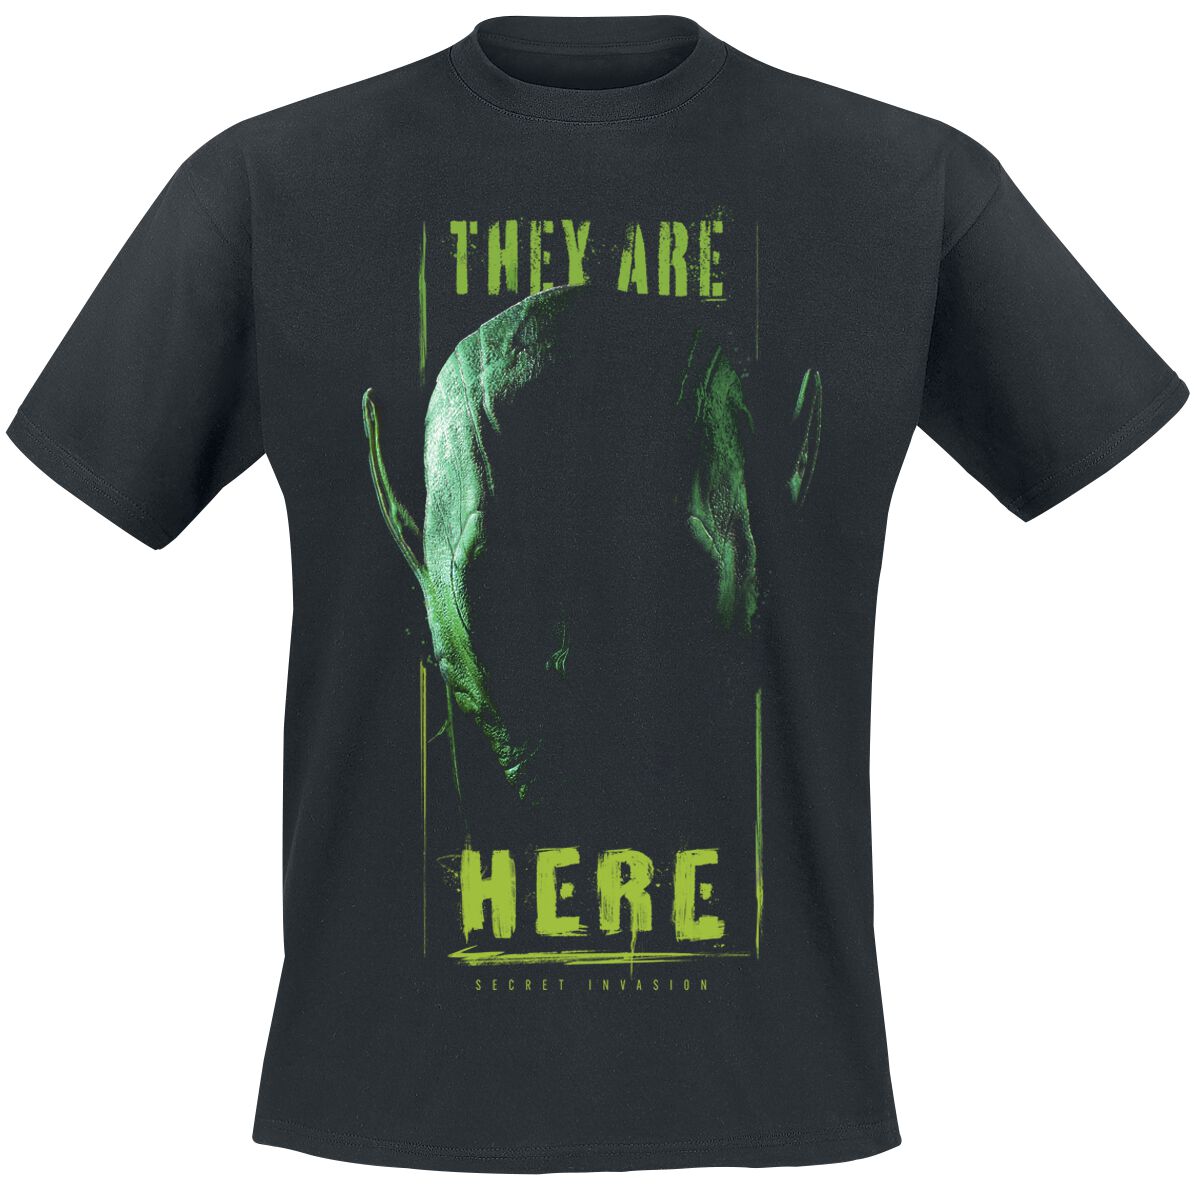 Secret Invasion - Marvel T-Shirt - They Are Here - S bis XXL - für Männer - Größe S - schwarz  - EMP exklusives Merchandise!